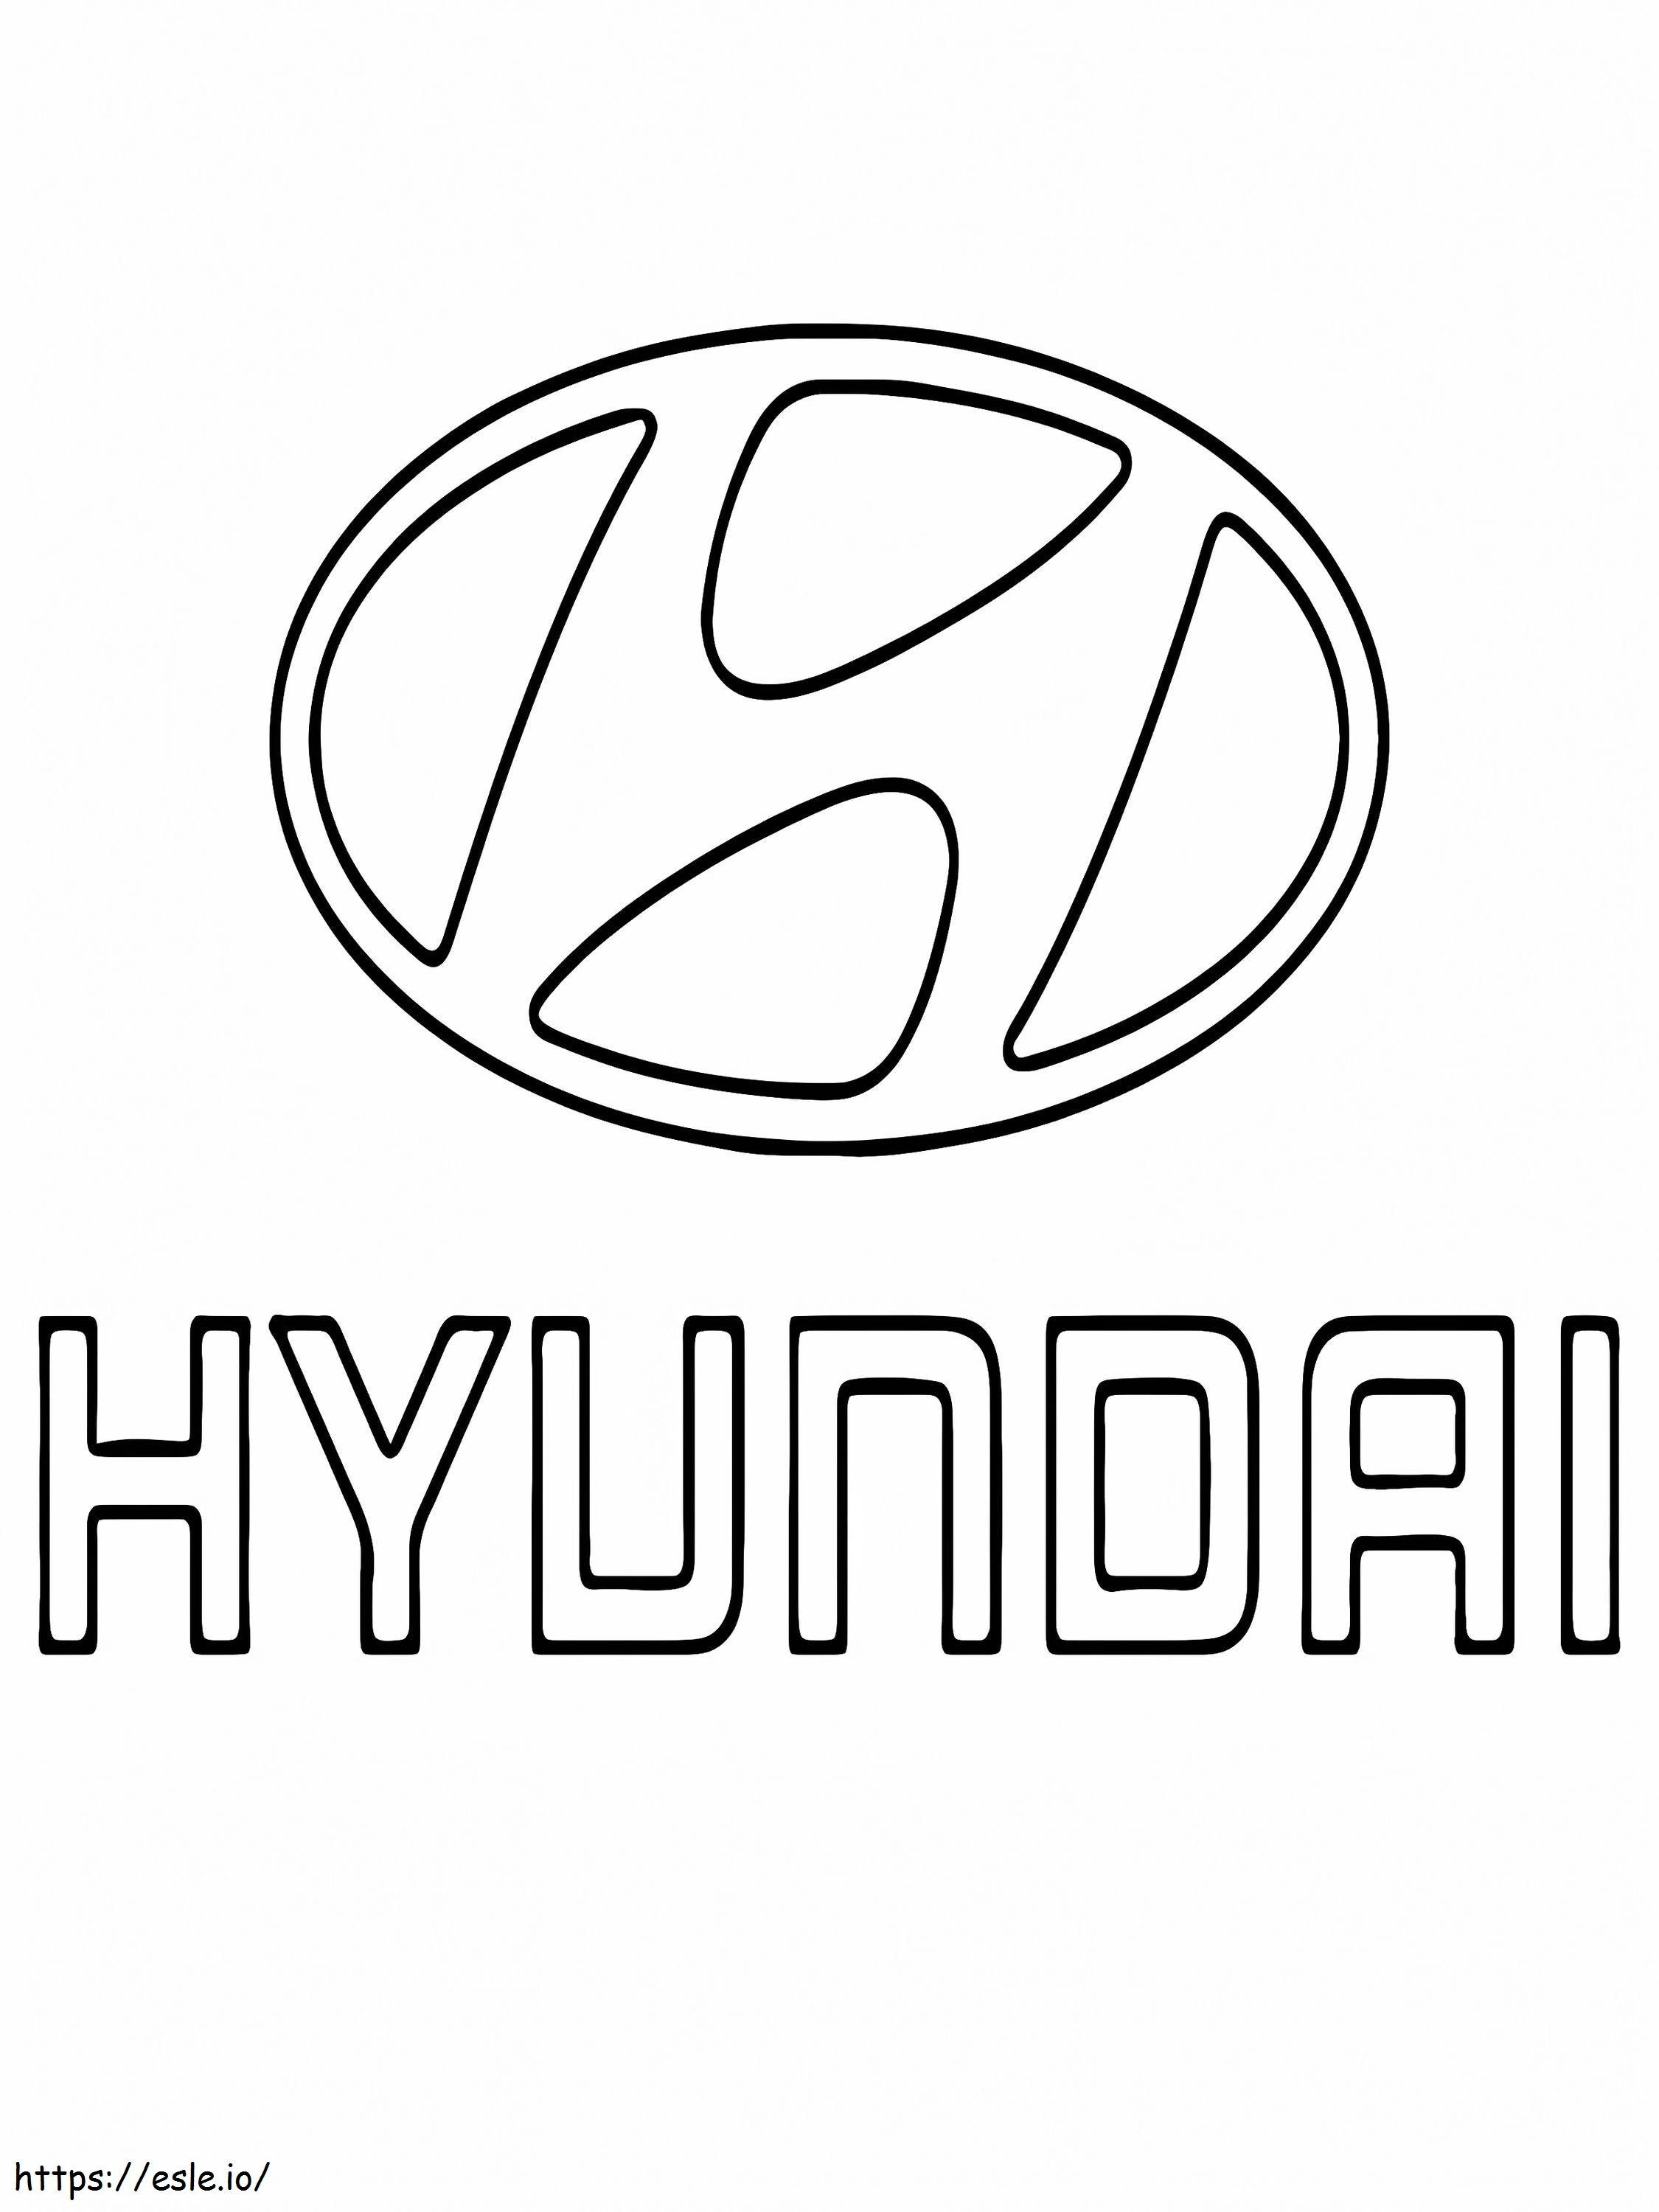 Logotipo Del Coche Hyundai para colorear